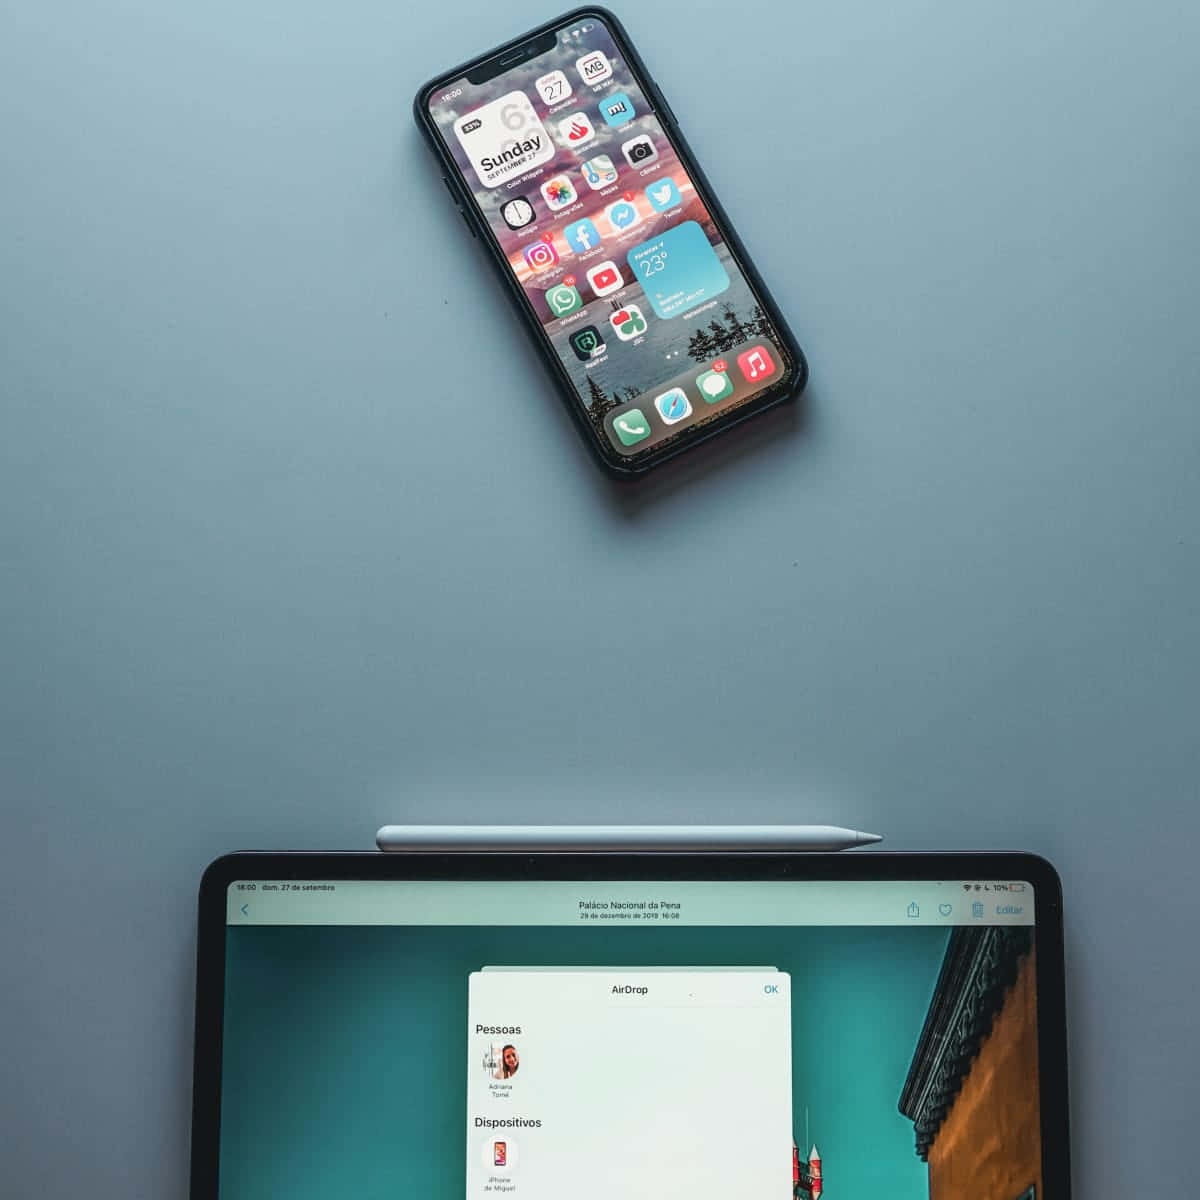 Et laptop og en iPhone vises ved siden af hinanden.